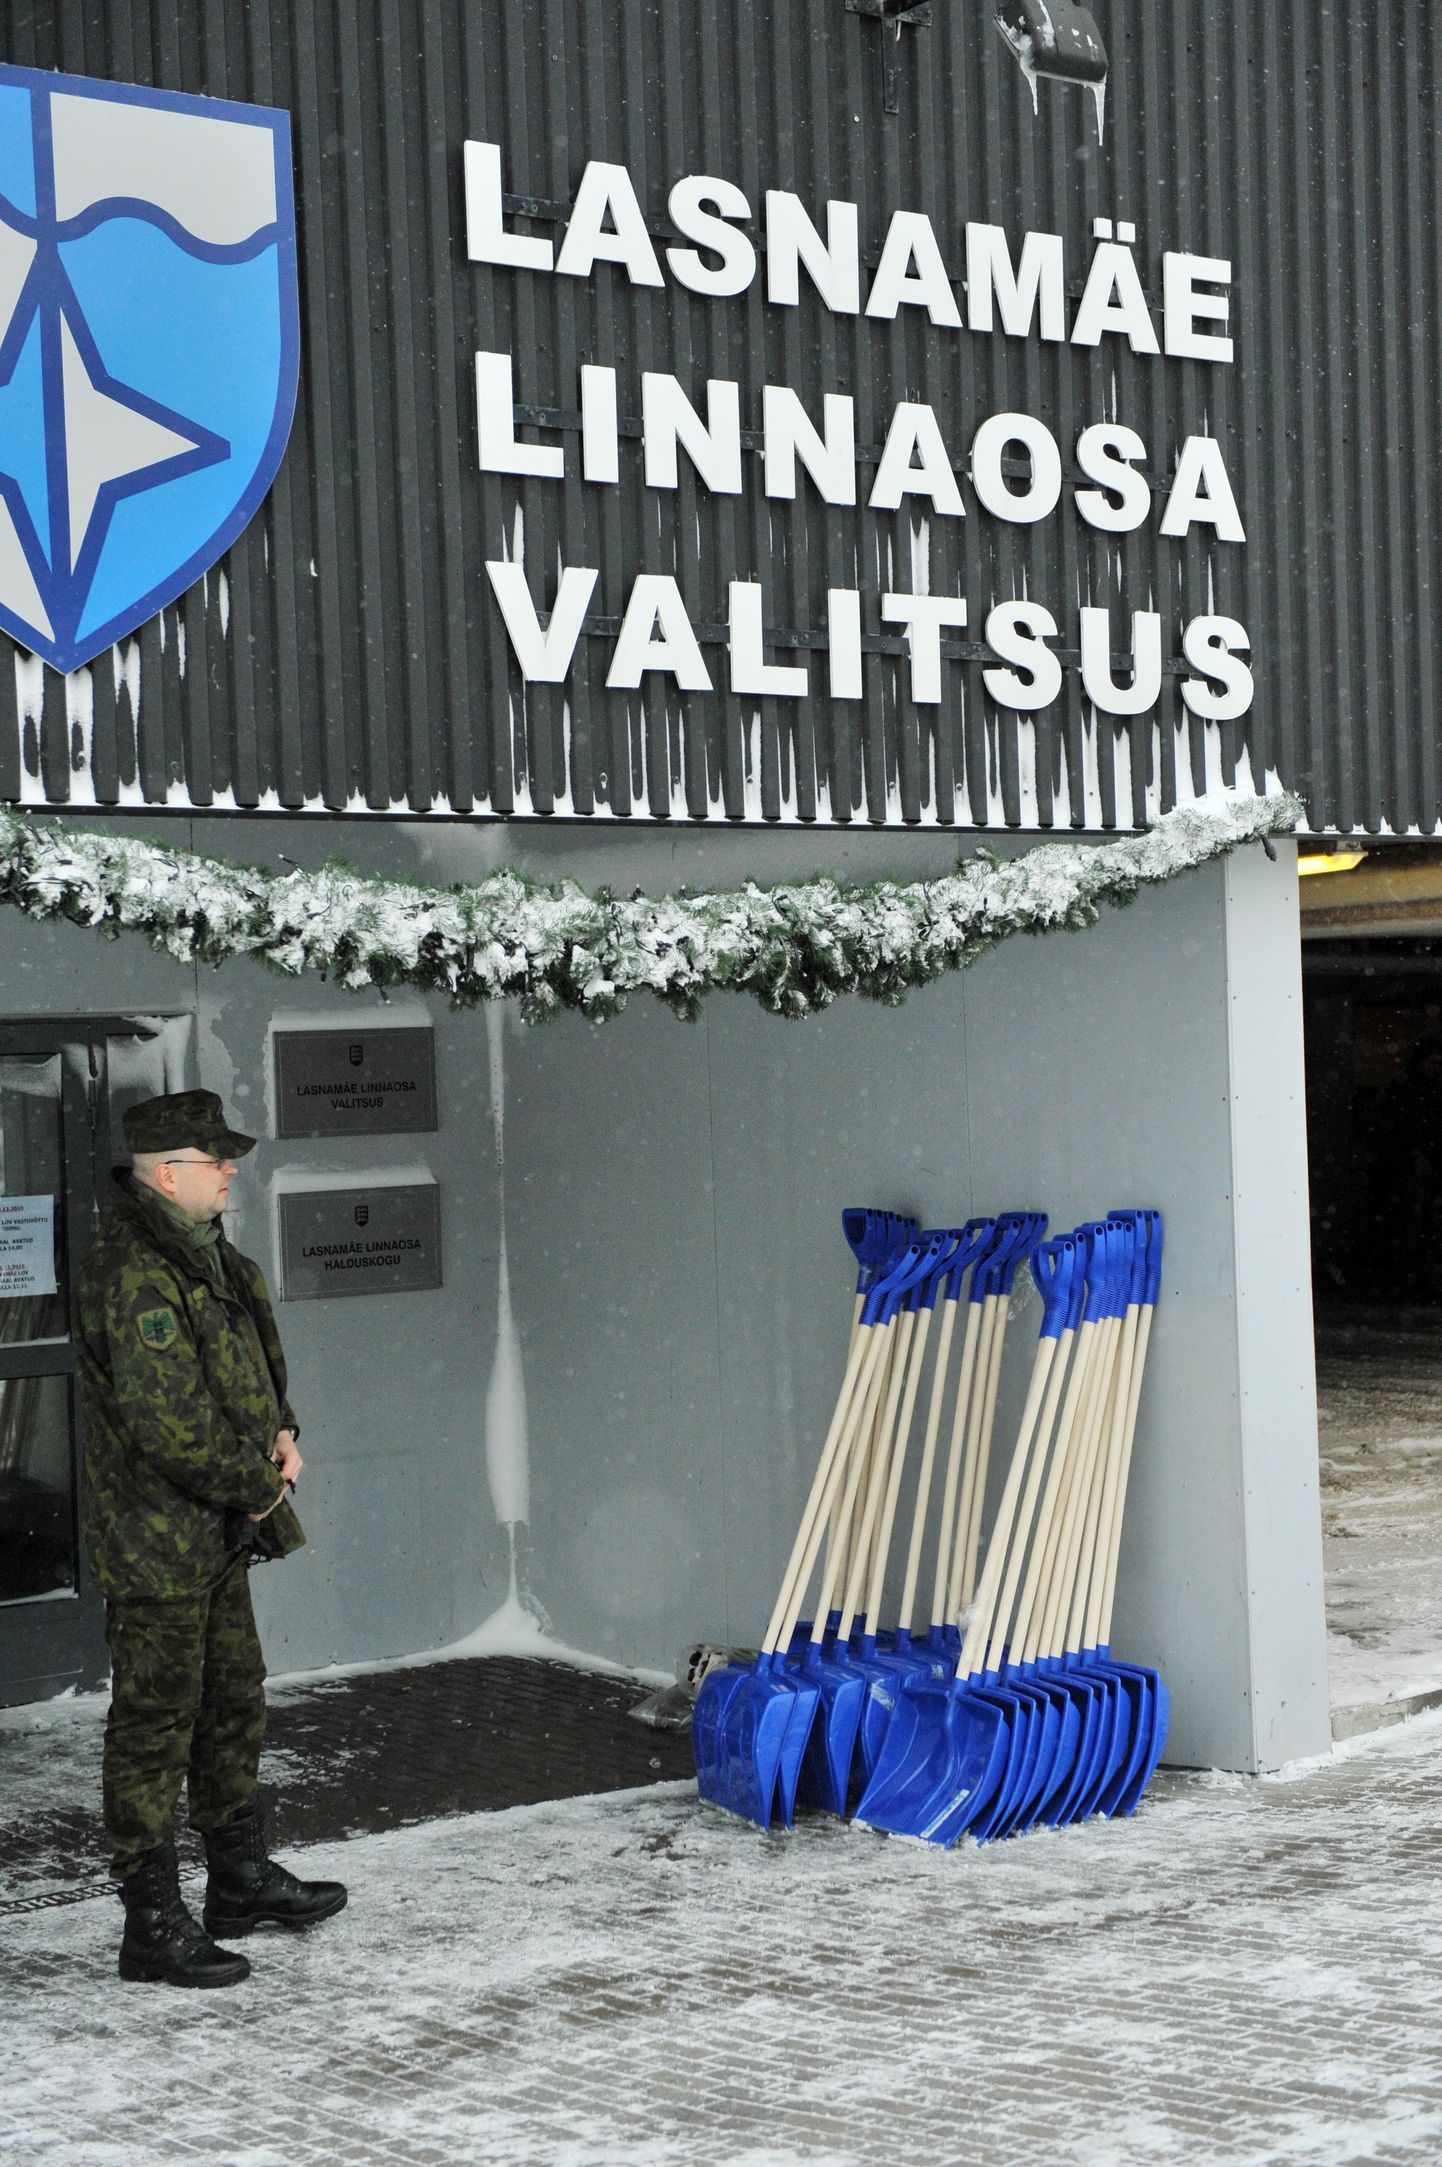 Kaitseväelased abistavad Lasnamäe linnaosavalitsust lumetõrjes.